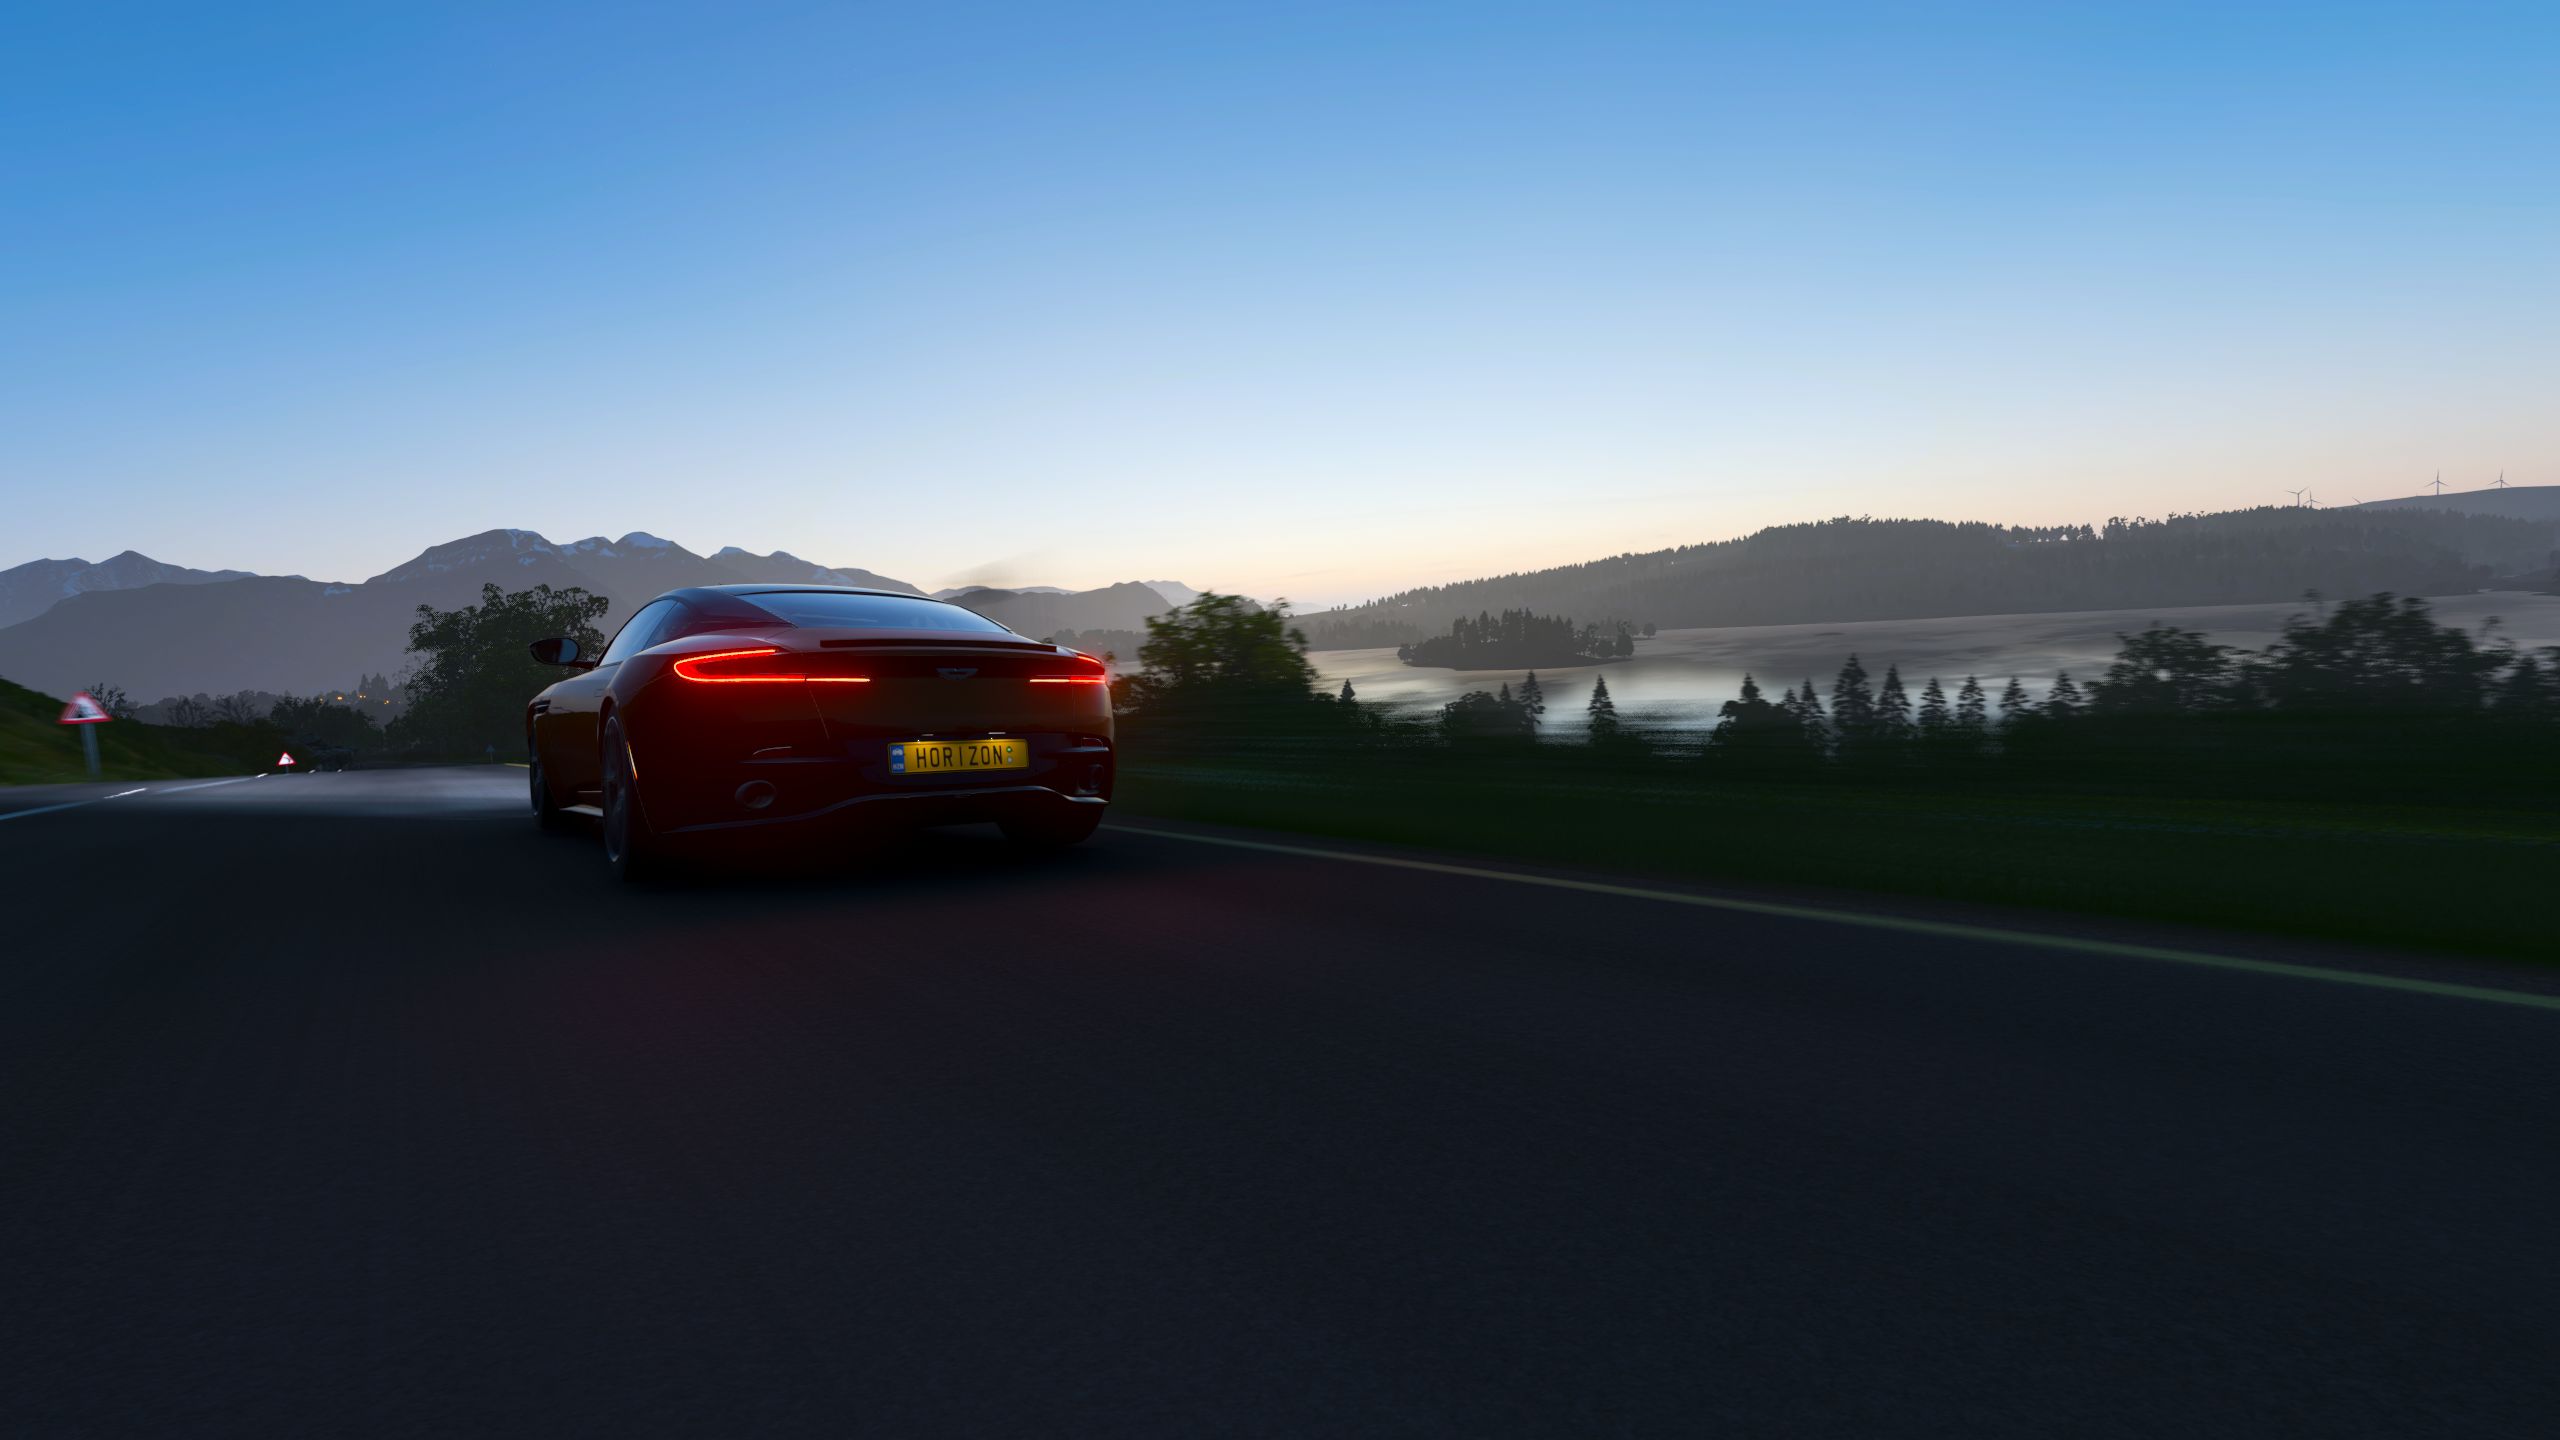 Descarga gratuita de fondo de pantalla para móvil de Aston Martin, Coche, Fuerza, Atardecer, Vehículo, Videojuego, Forza Horizon 4.